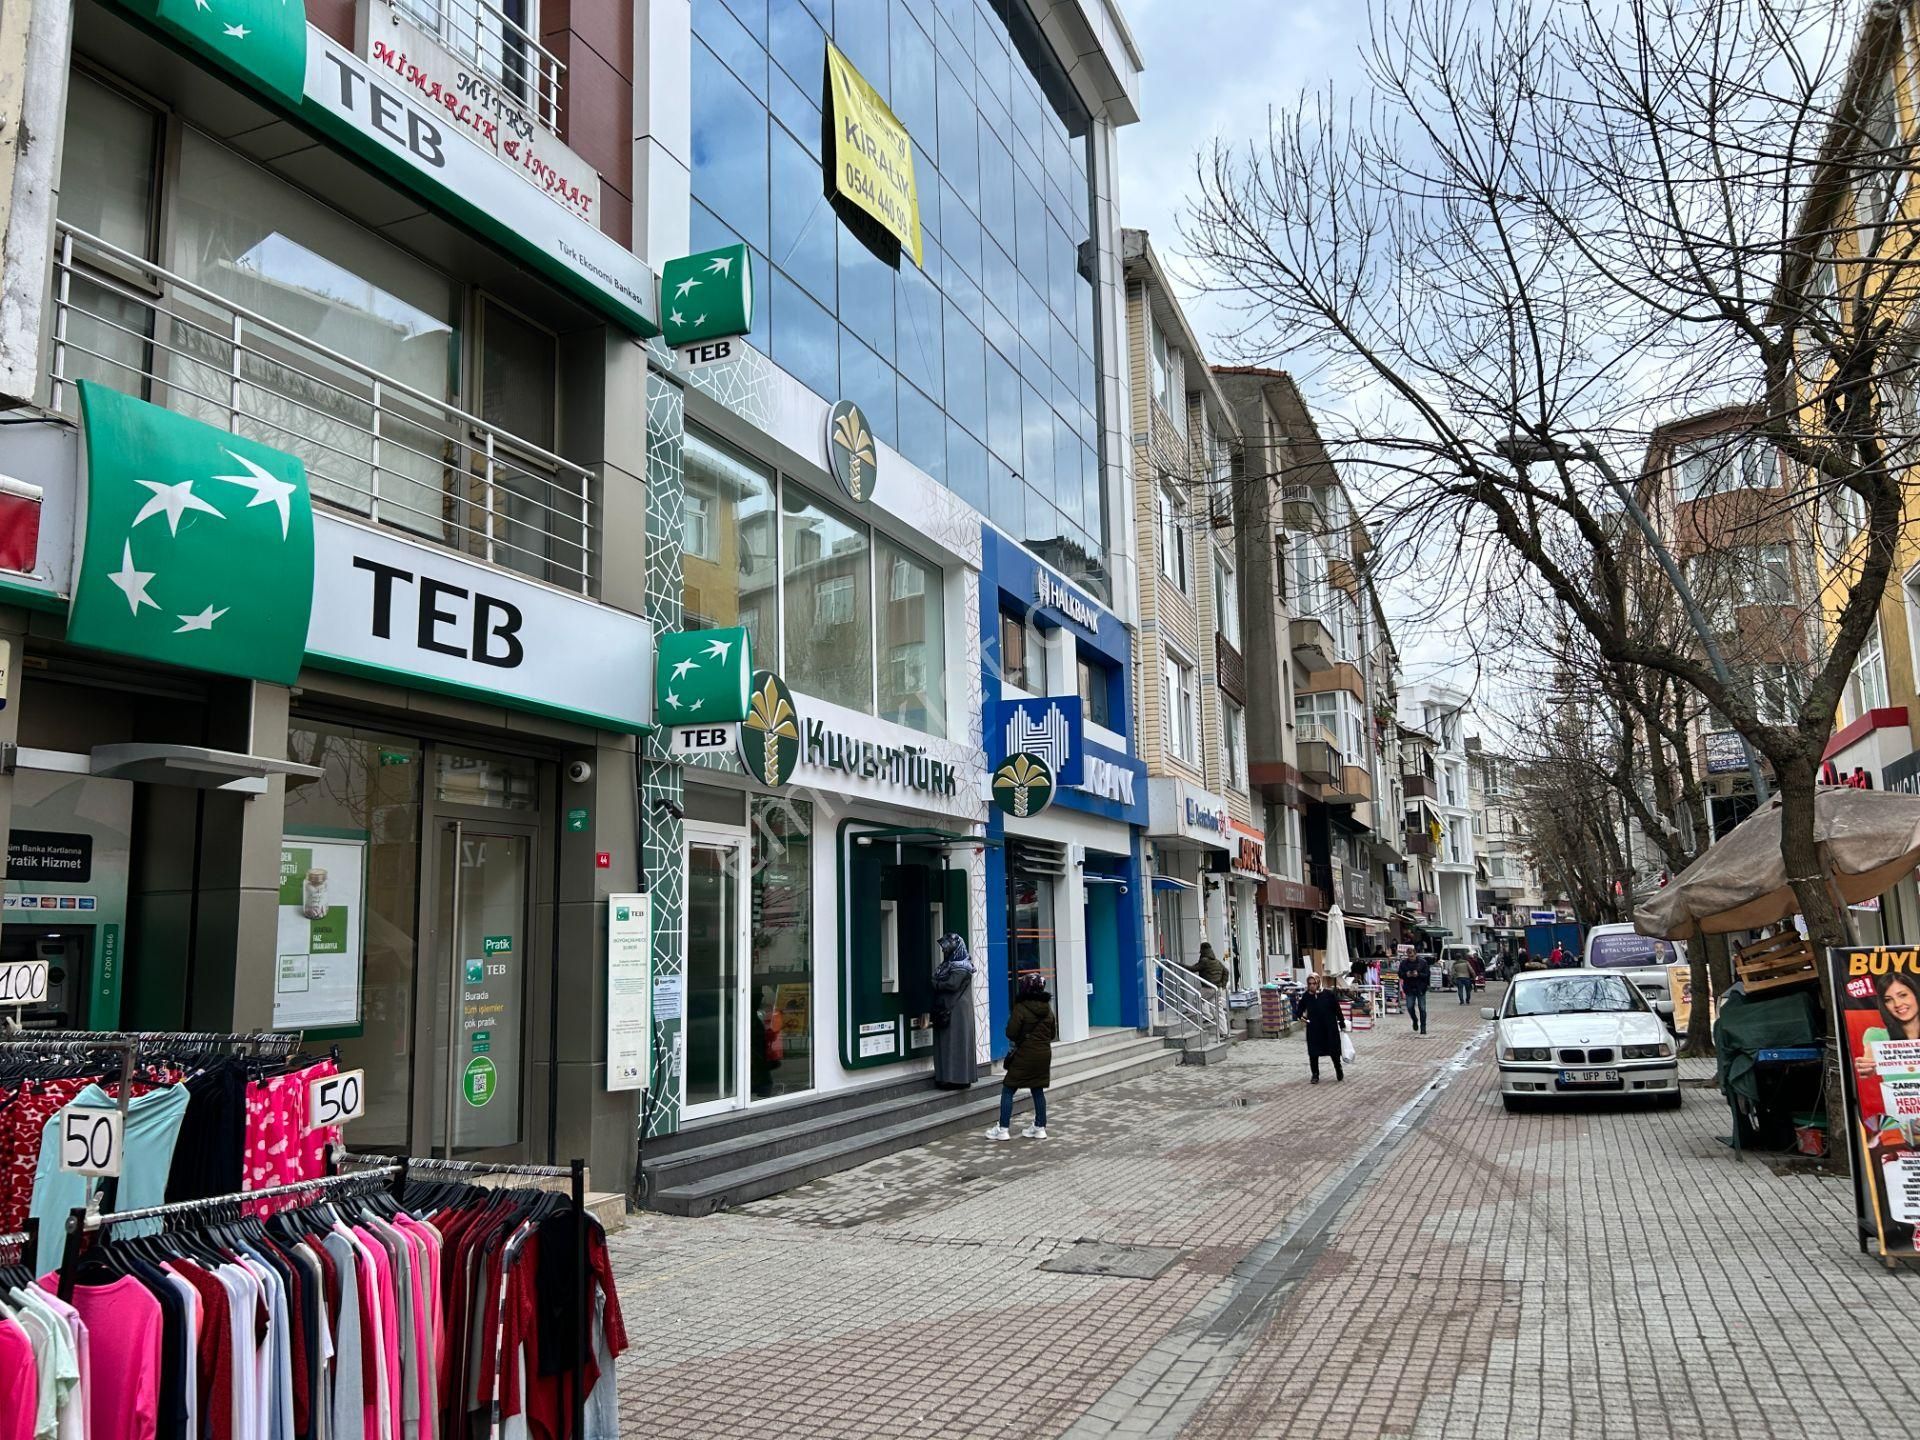 Büyükçekmece Dizdariye Kiralık Dükkan & Mağaza  Büyükçekmece,Kemal Atatürk Caddesi,Yürüyüş Yolunda Kiralık Mağaza